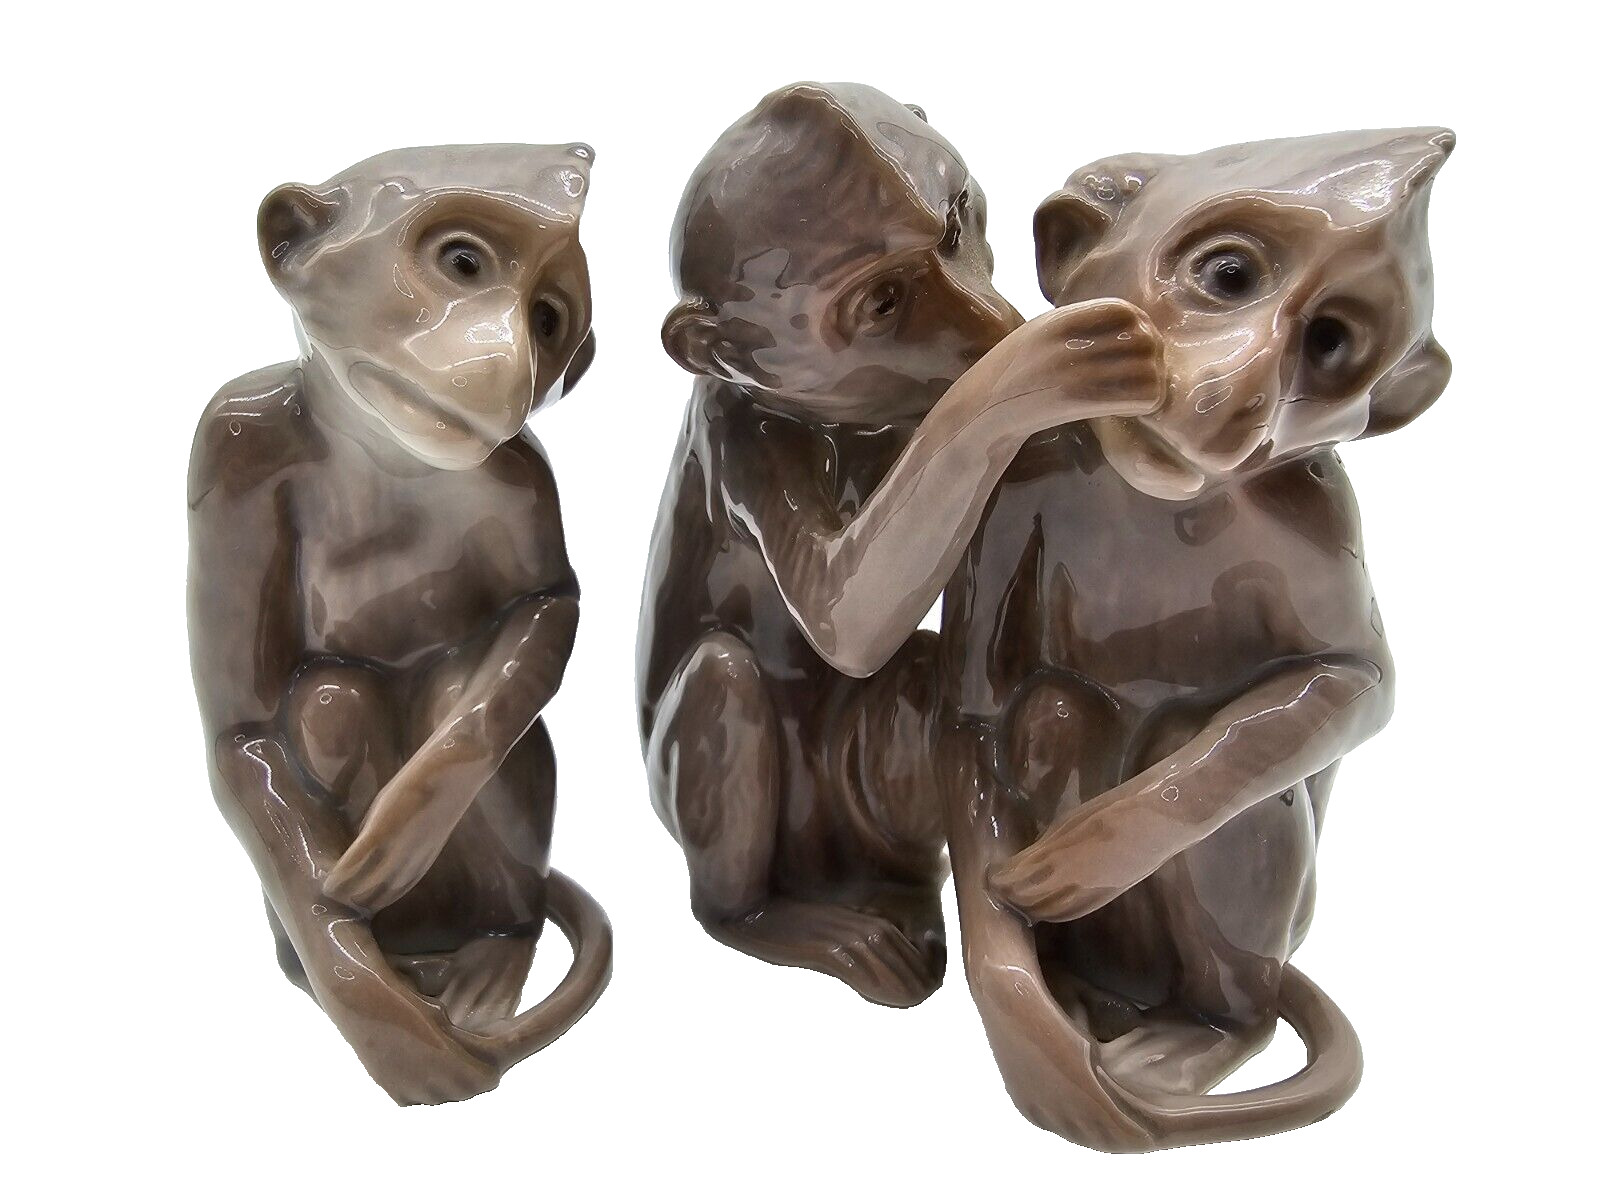 Vintage B&G Bing & Grondahl 1524/1667 Monkeys Grooming 2 Figurines Denmark